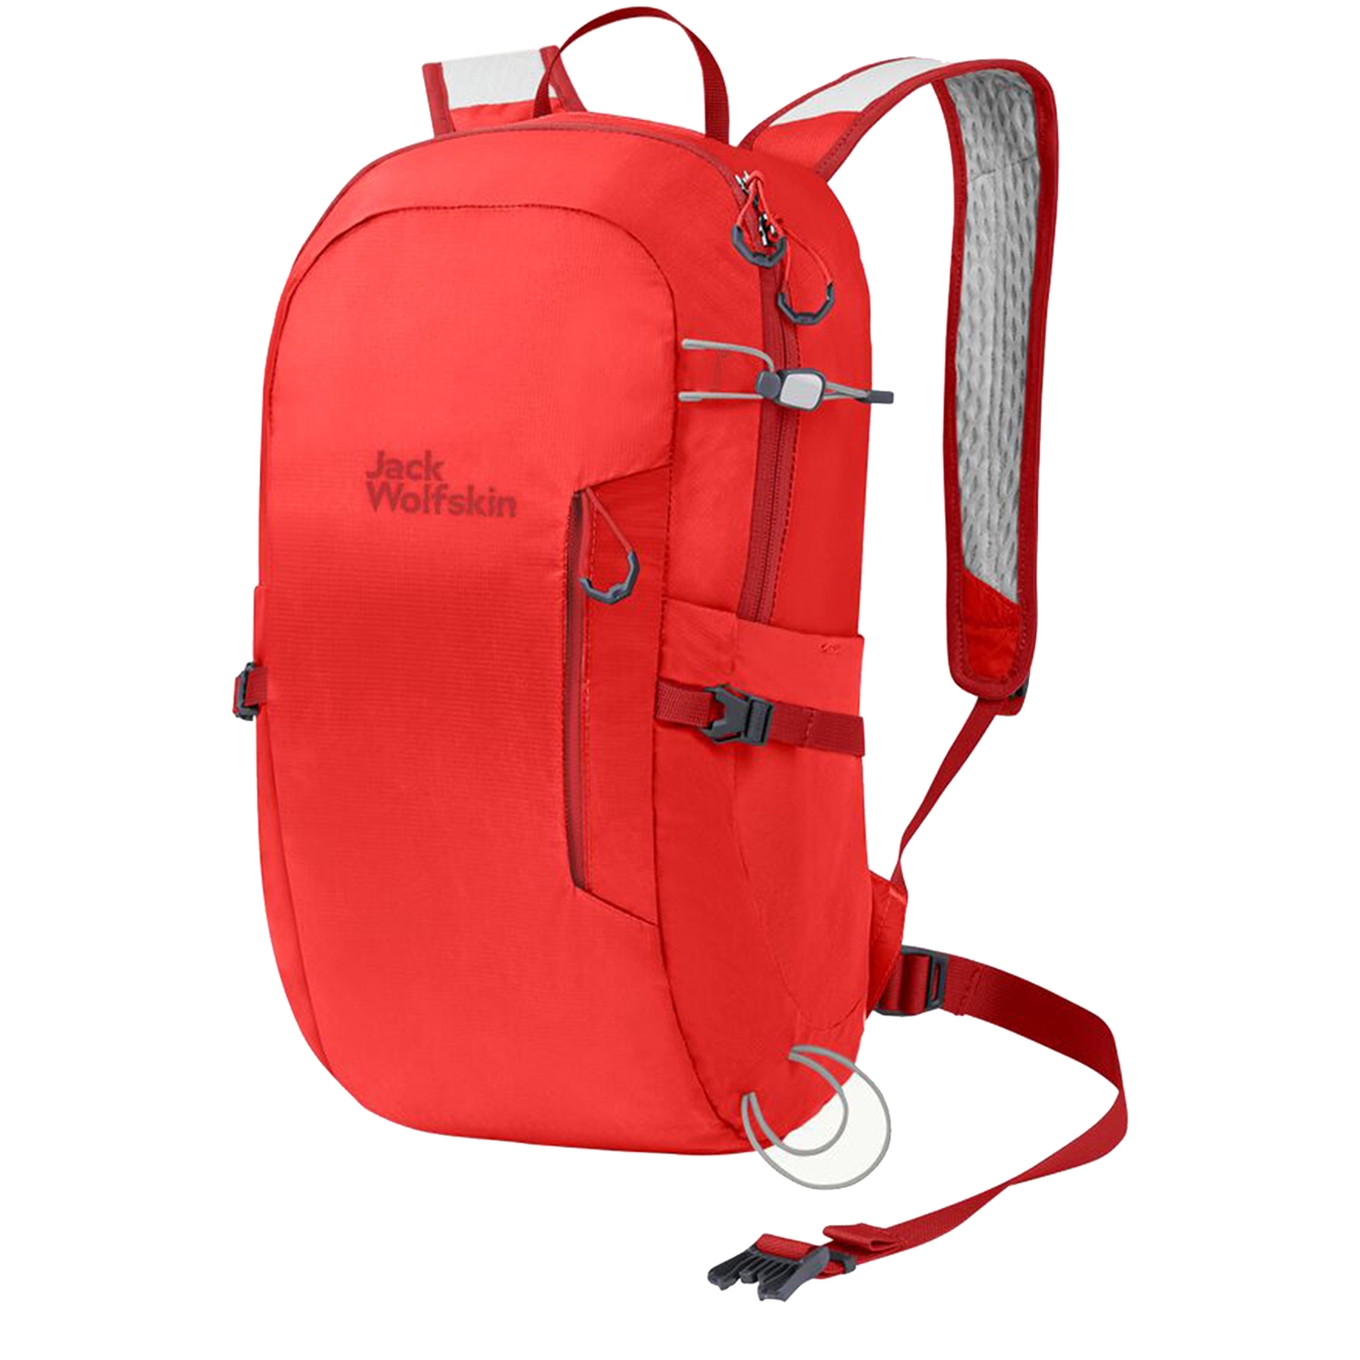 Jack Wolfskin Athmos Shape 16 Hiking Pack tango orange backpack